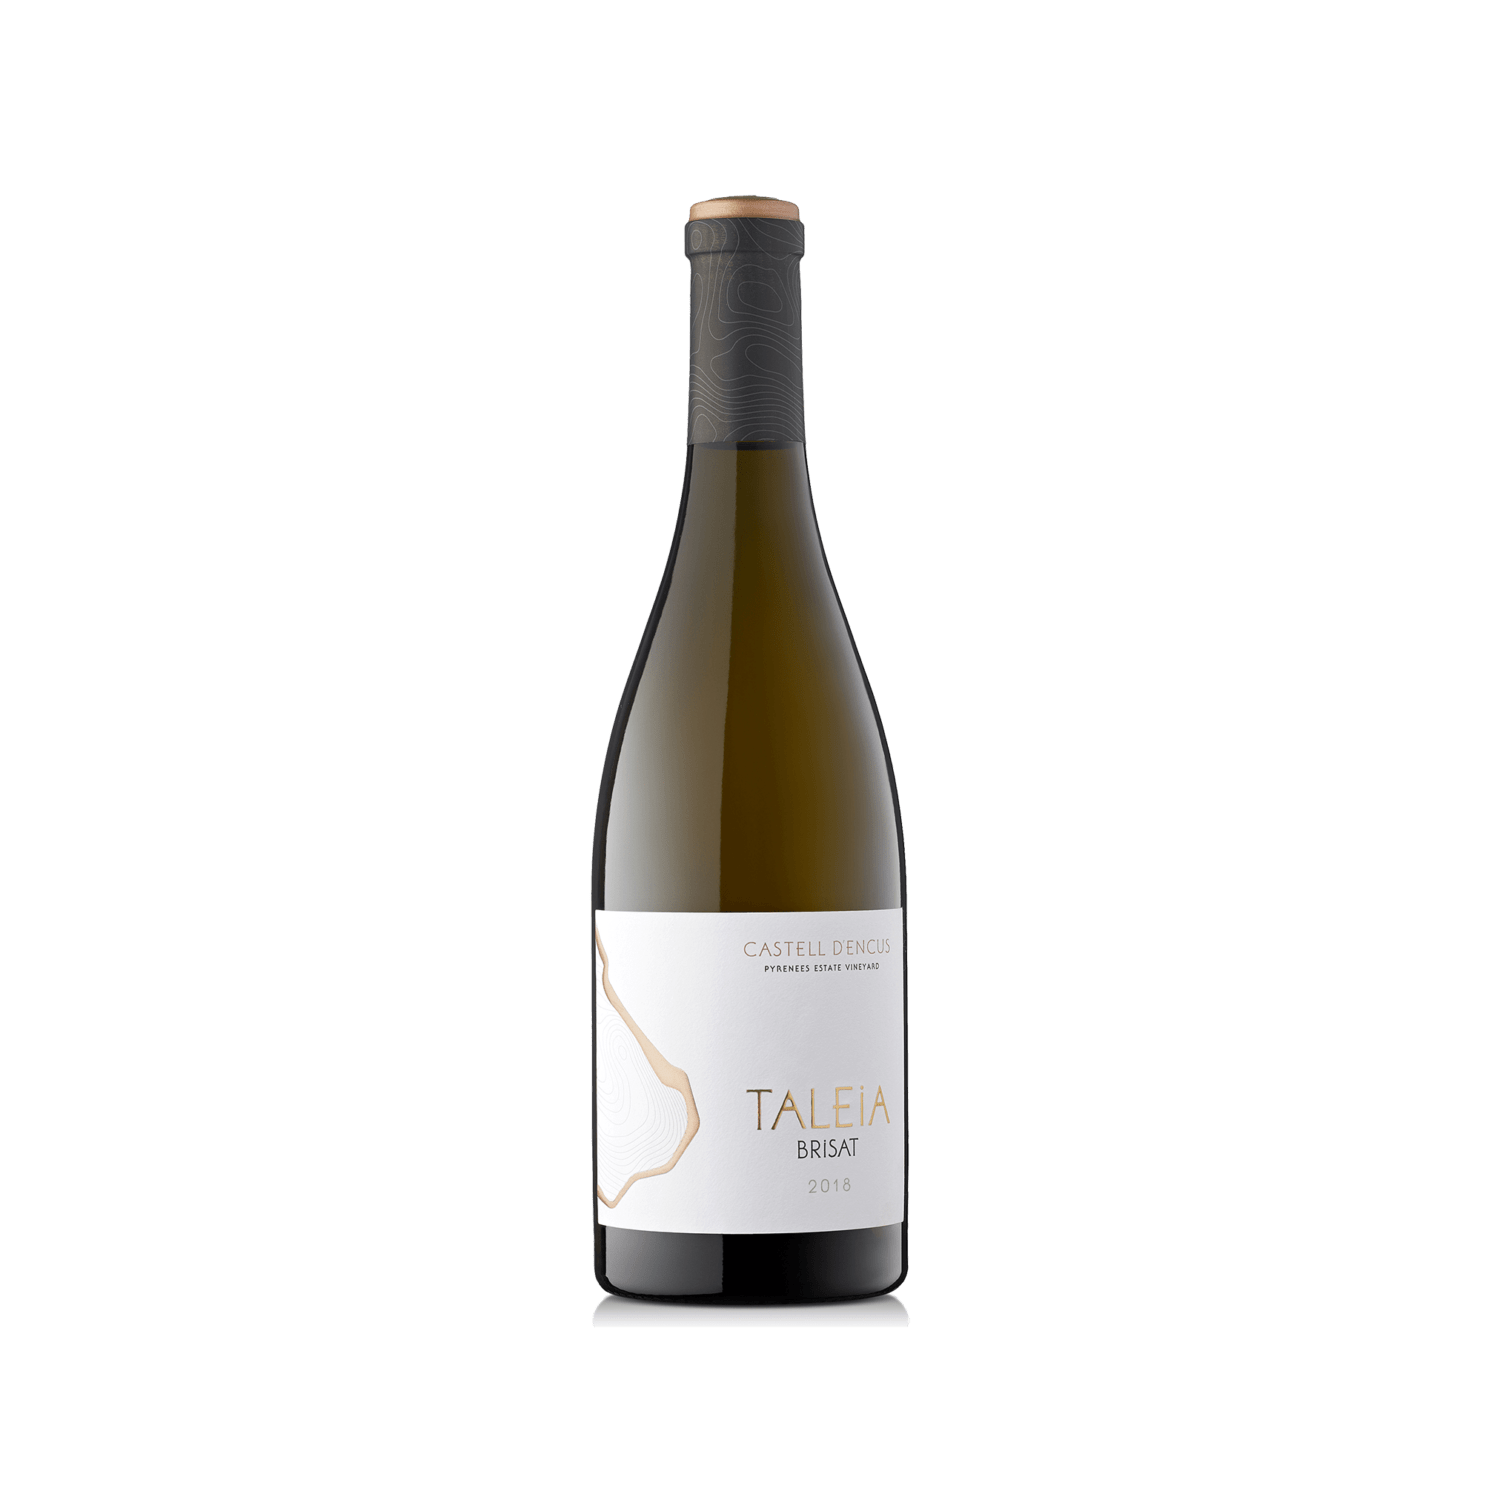 Ampolla d'estudi del vi TALEIA BRISAT 2018